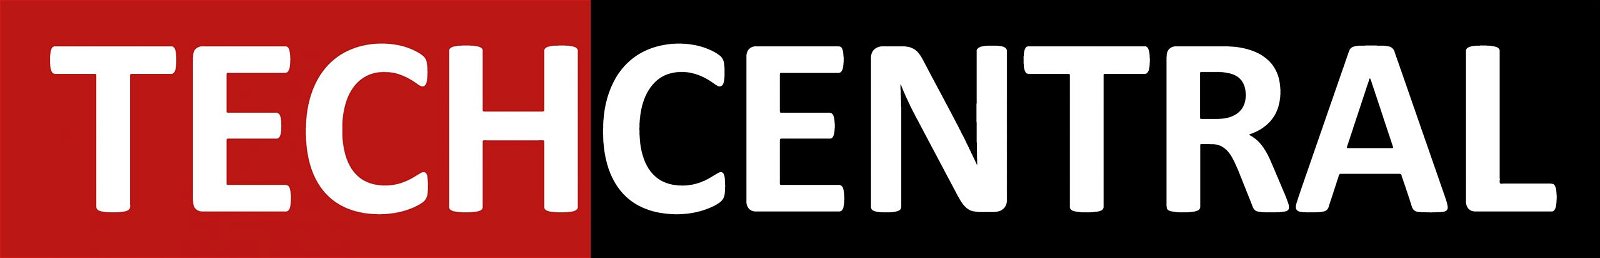 tech central logo